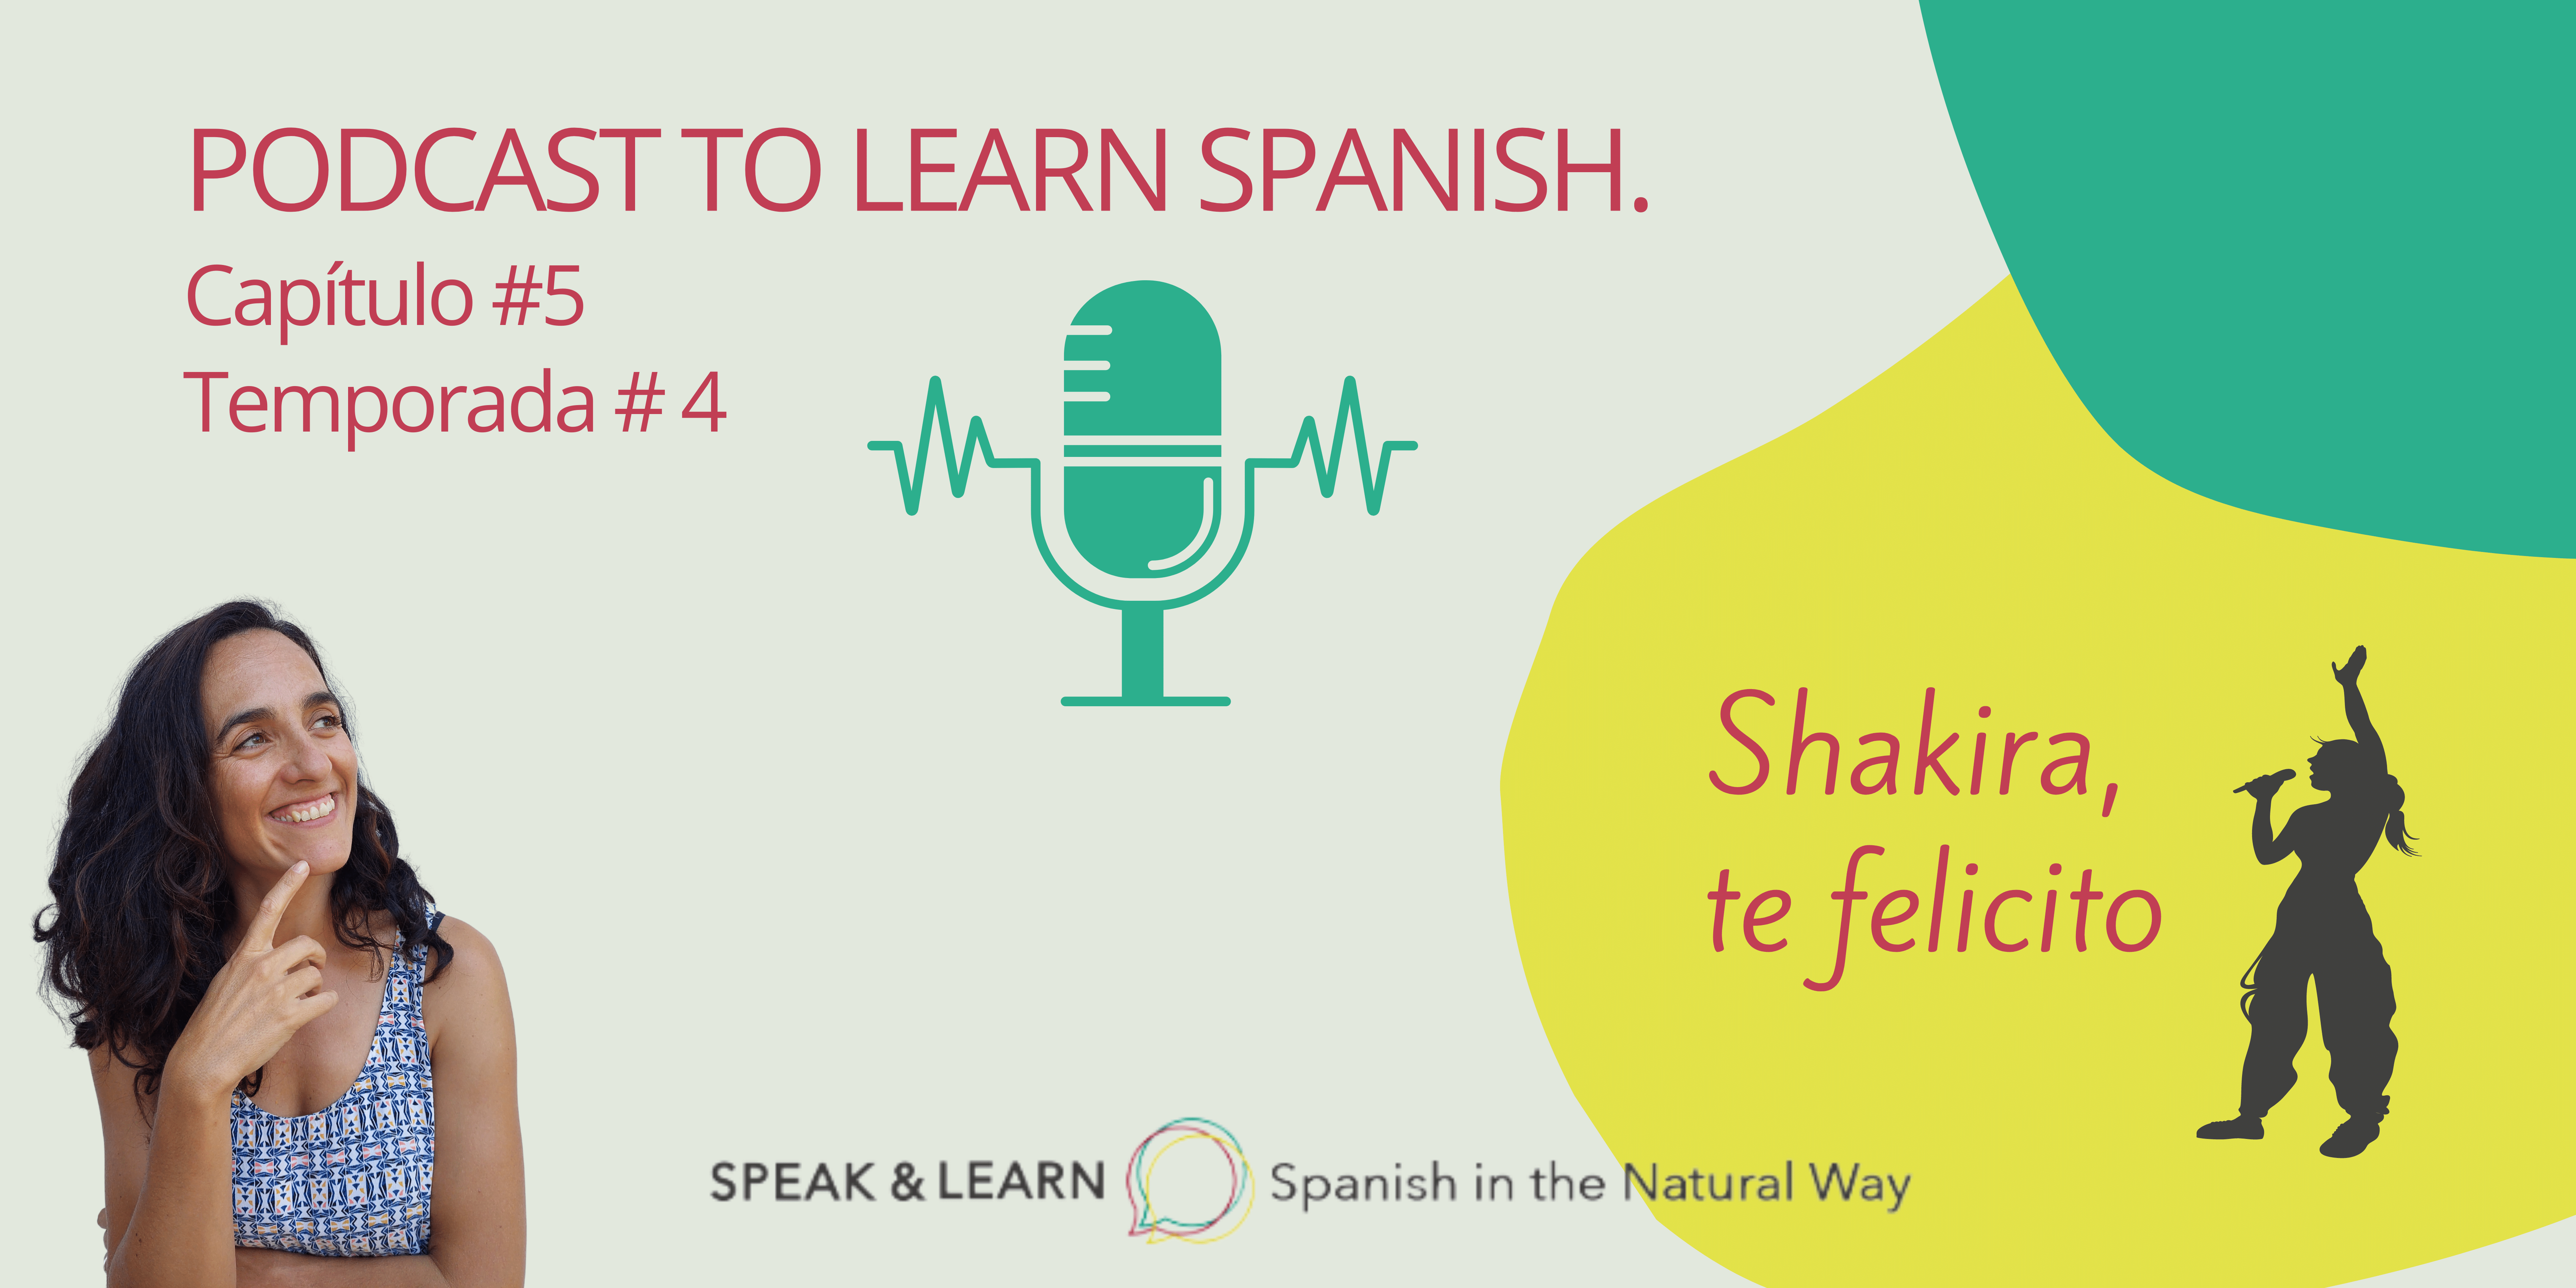 Hoy aprendemos español analizando la canción de Shakira: Te felicito